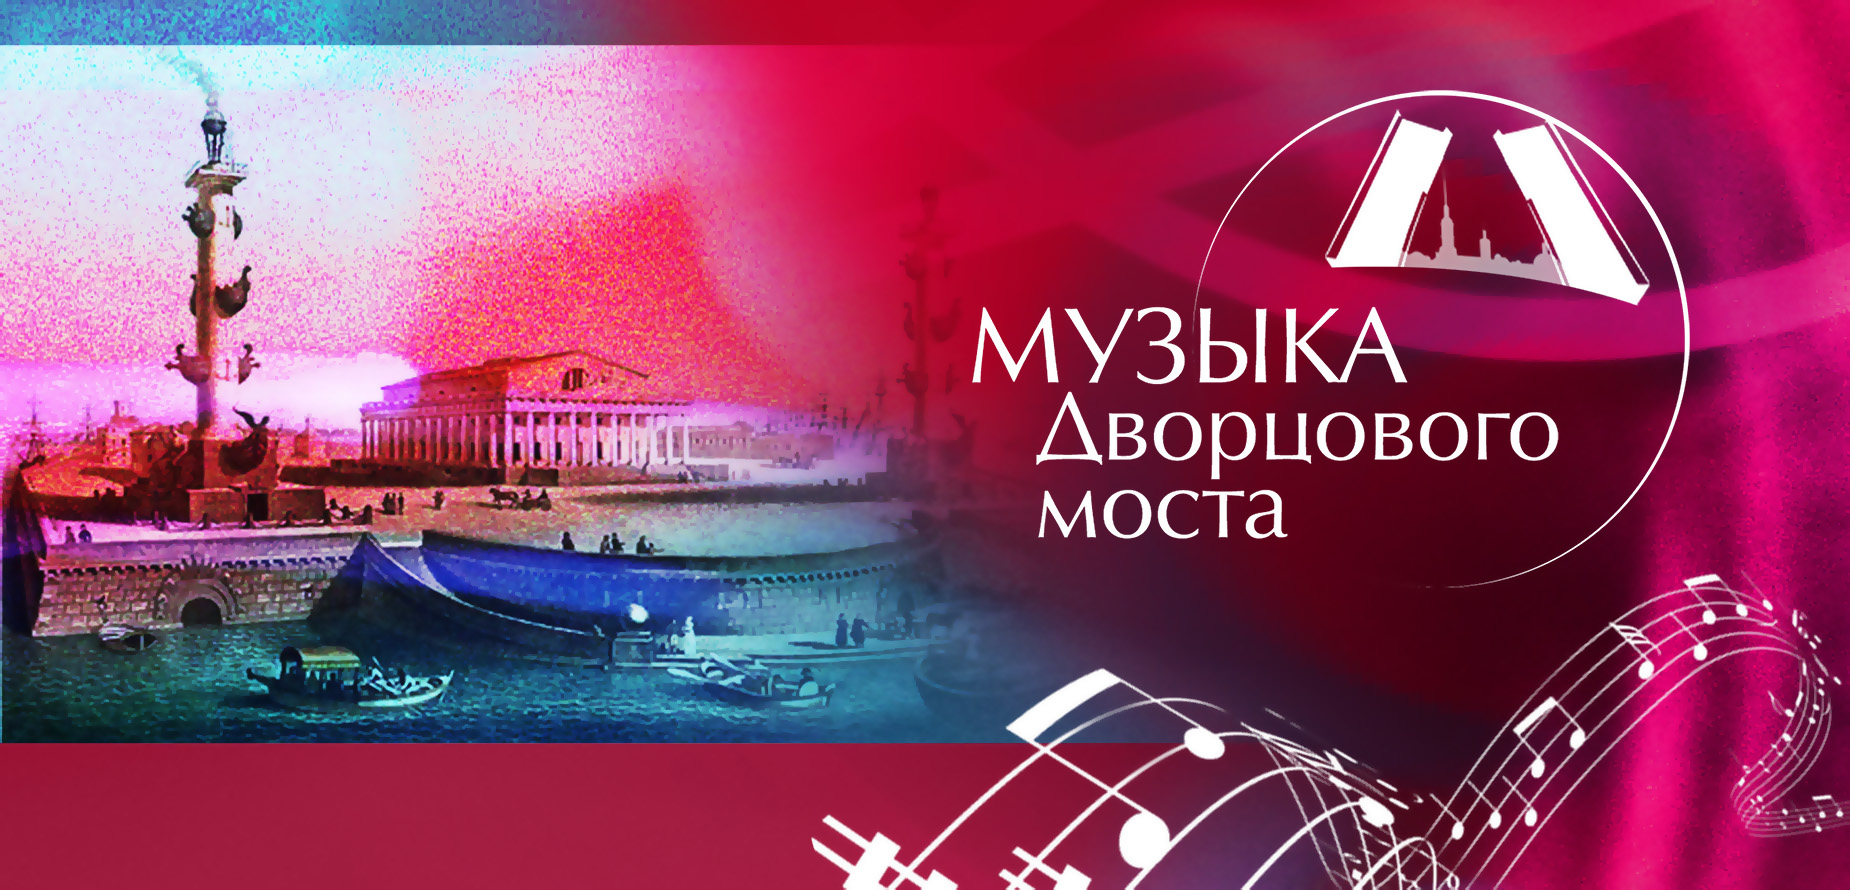 Музыка Дворцового моста зазвучит в День города